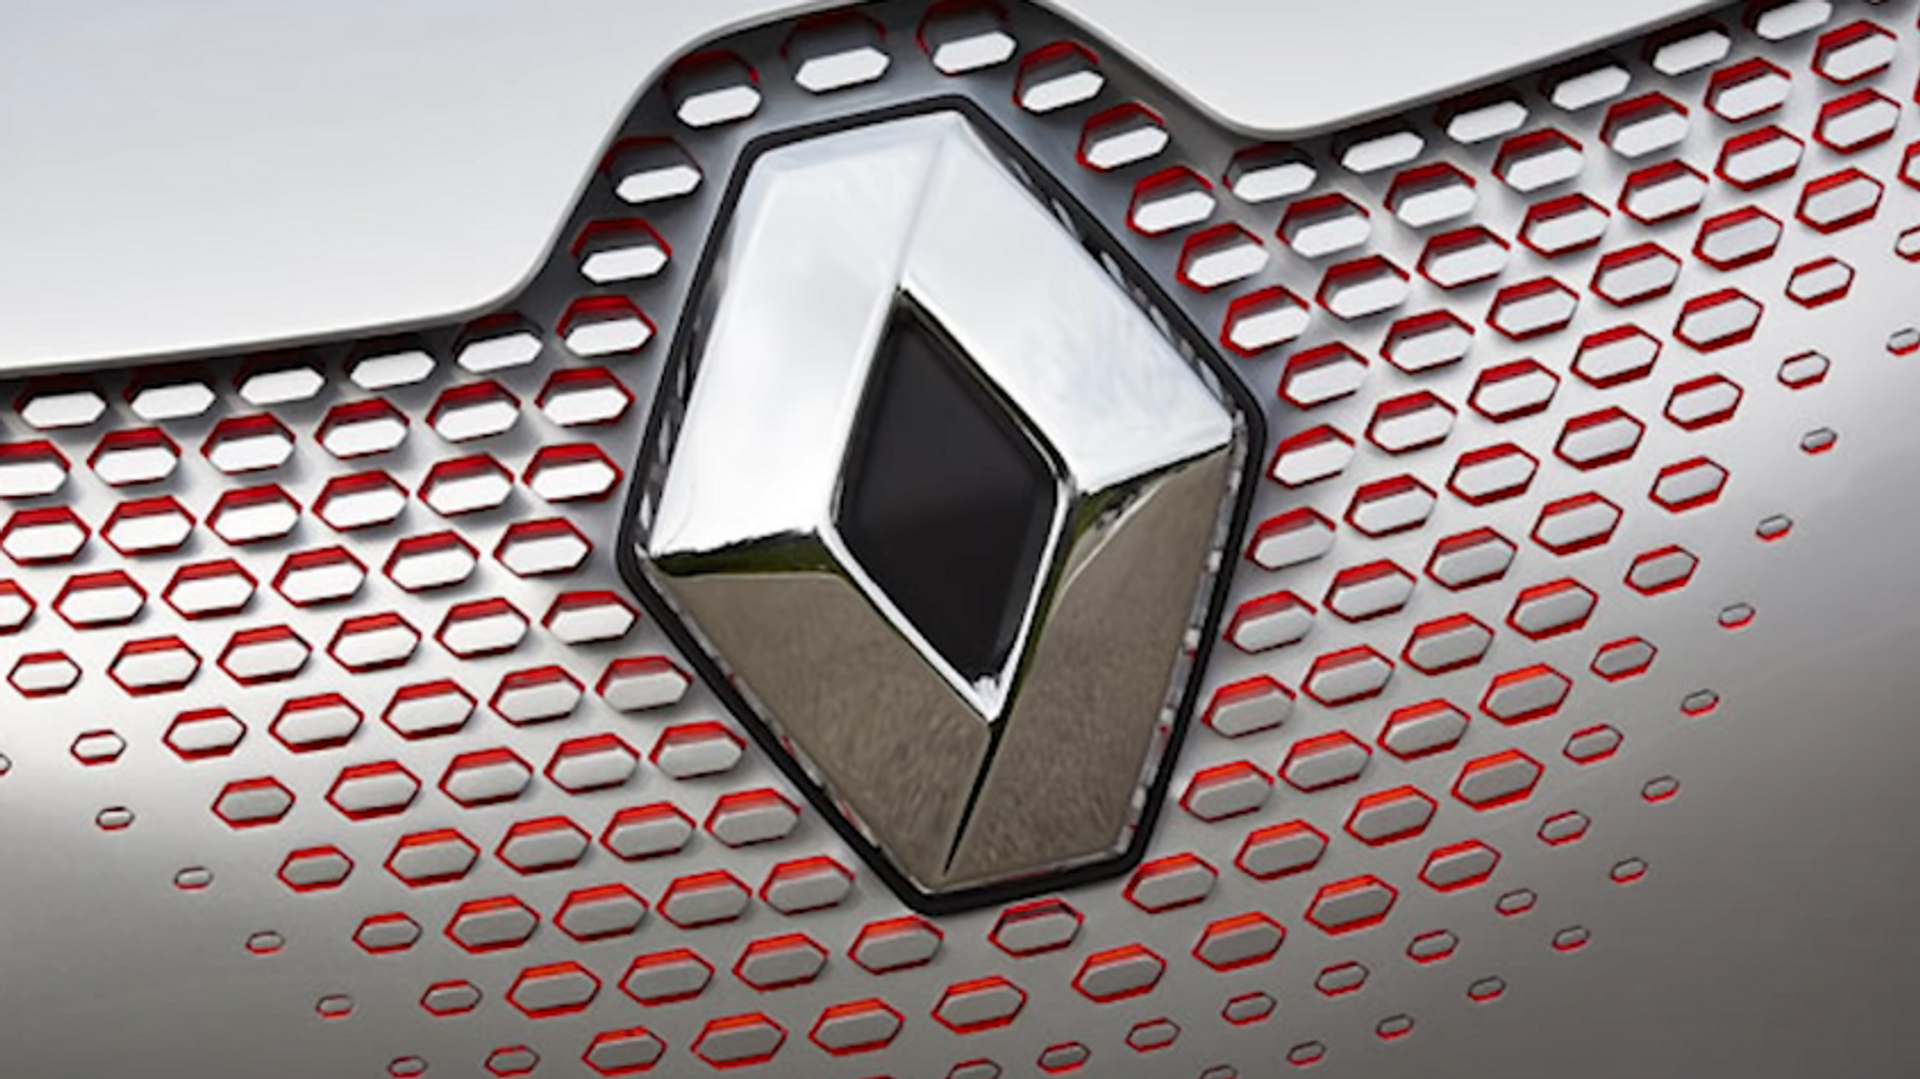 Renault presenta su nuevo logo con líneas retro